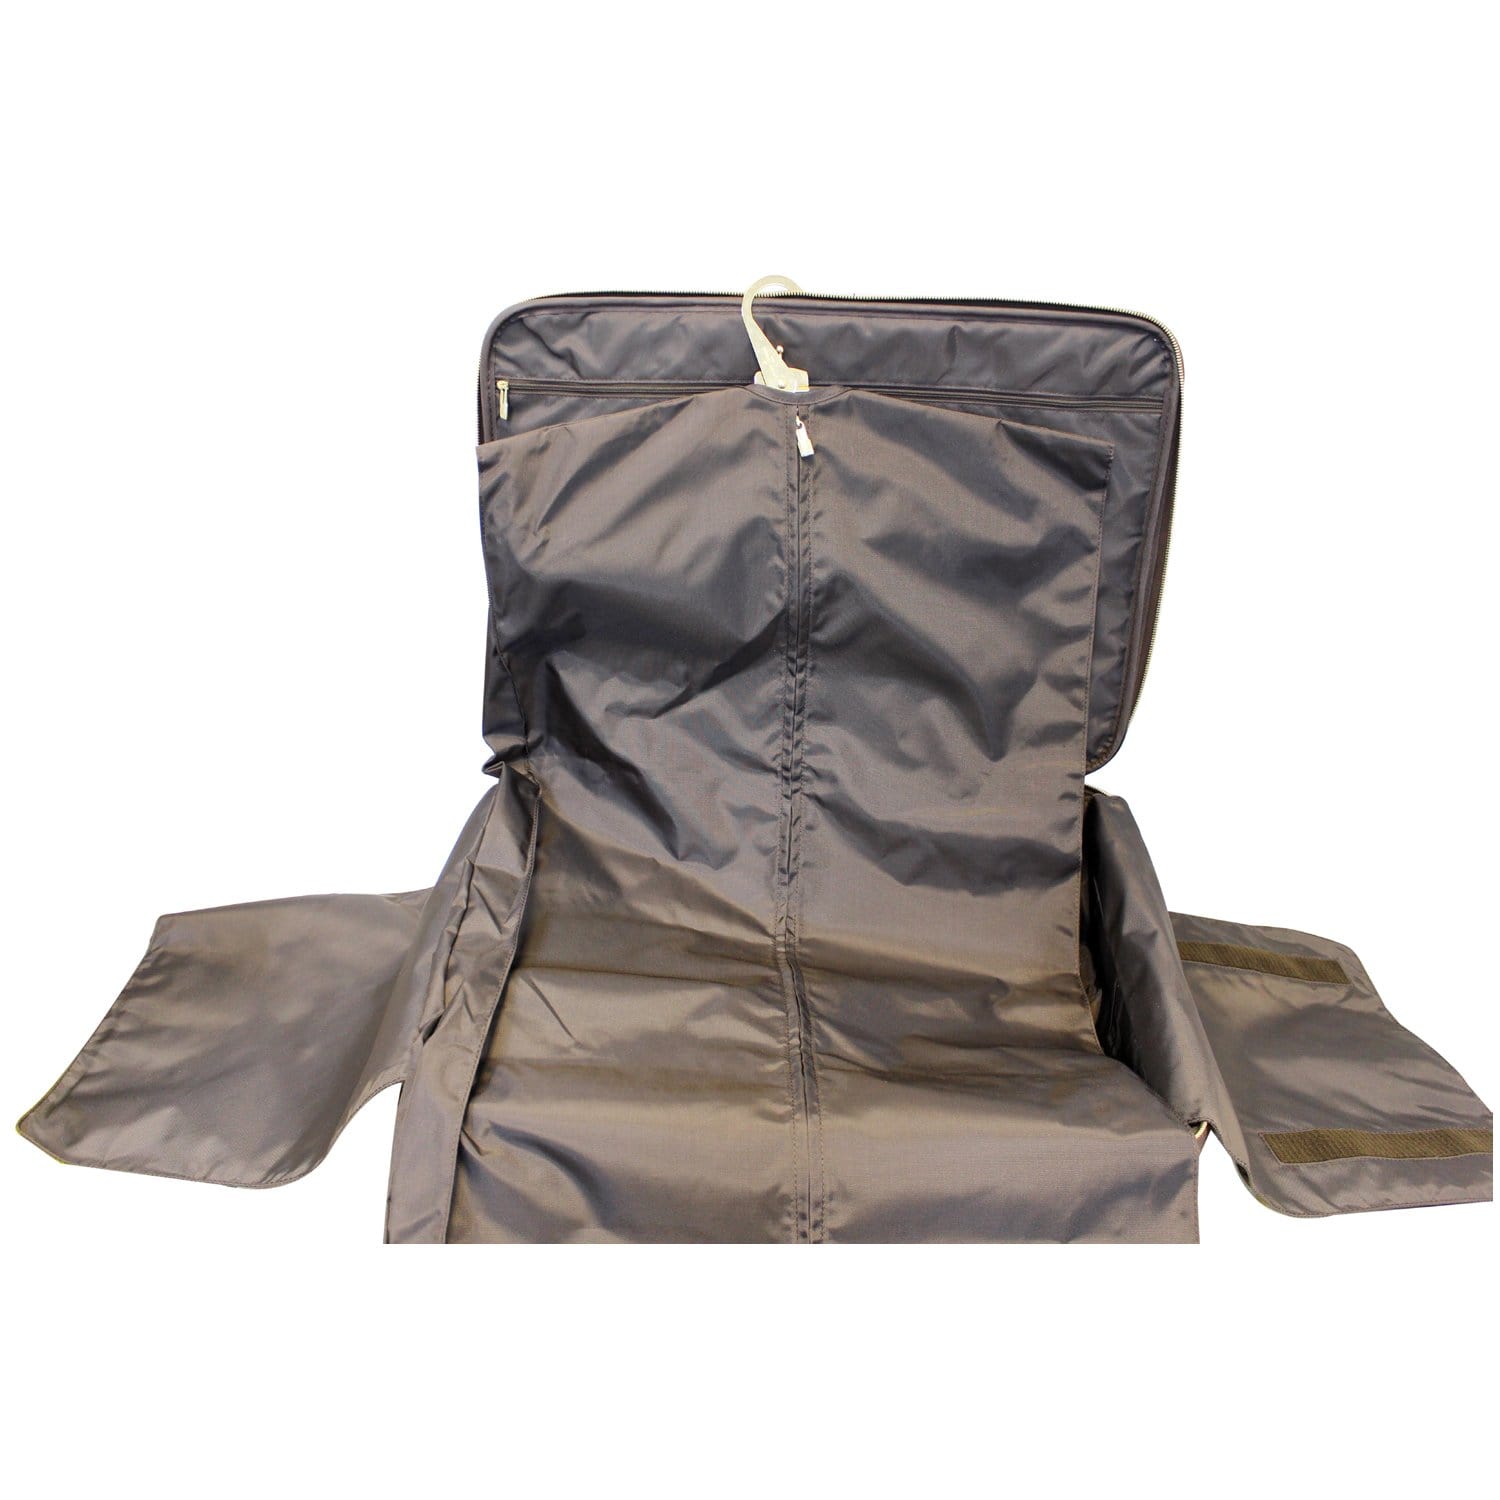 louis luggage bags waterproof